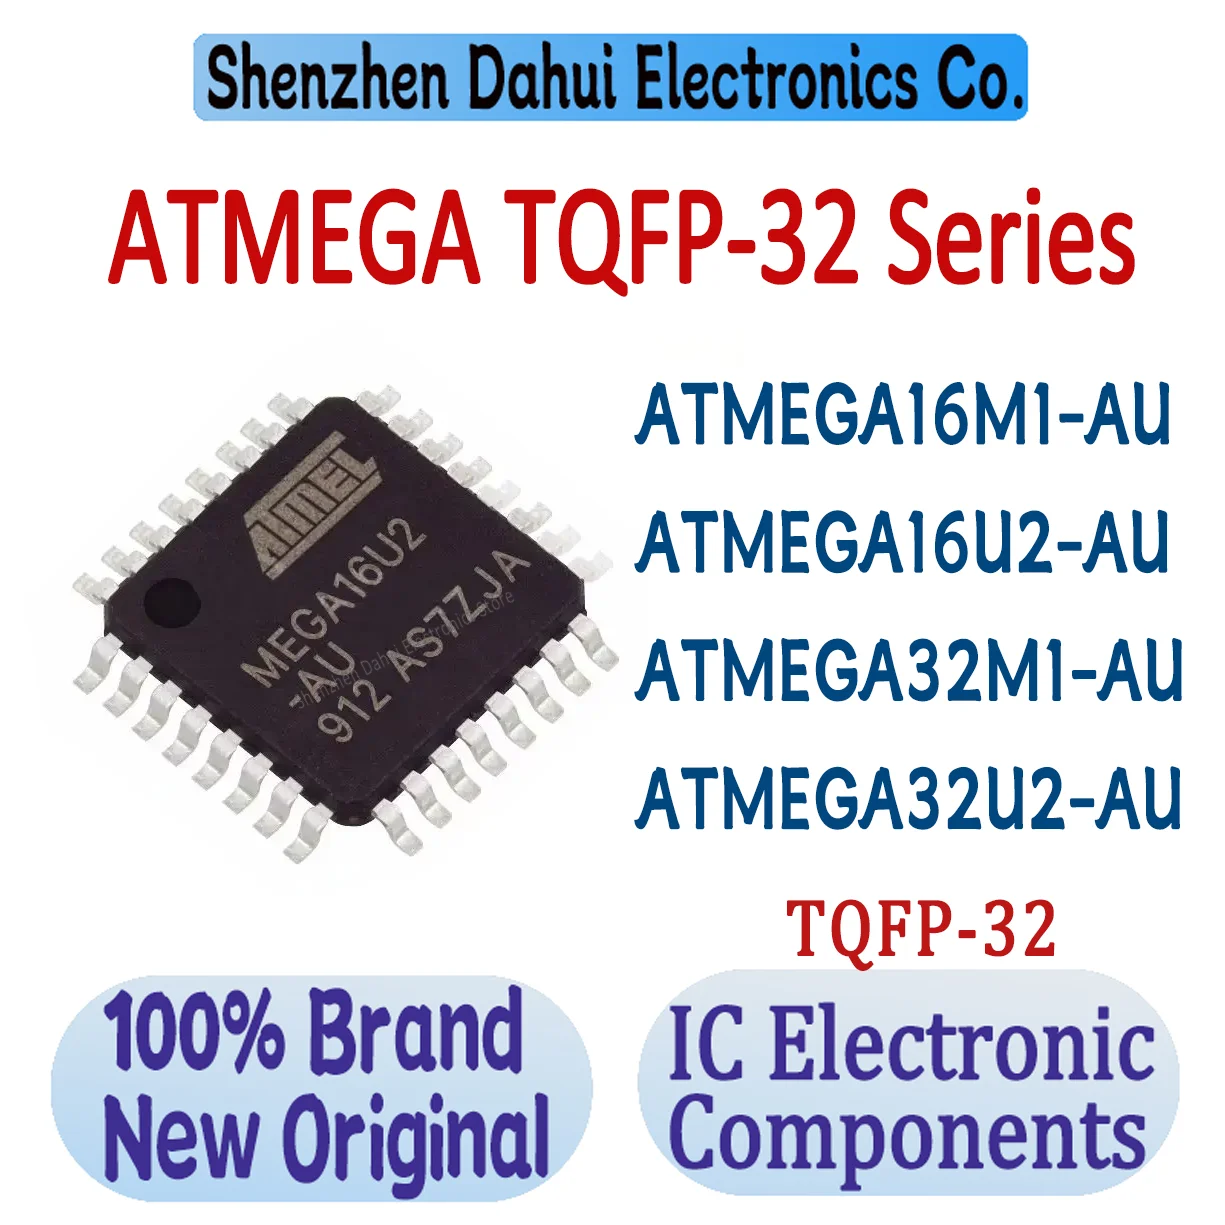 ATMEGA16M1-чип ATMEGA16U2-чип ATMEGA32M1-чип ATMEGA32U2-чип ATMEGA16 ATMEGA32 ATMEGA IC TQFP-32 в наличност на склад, 100% нов произход